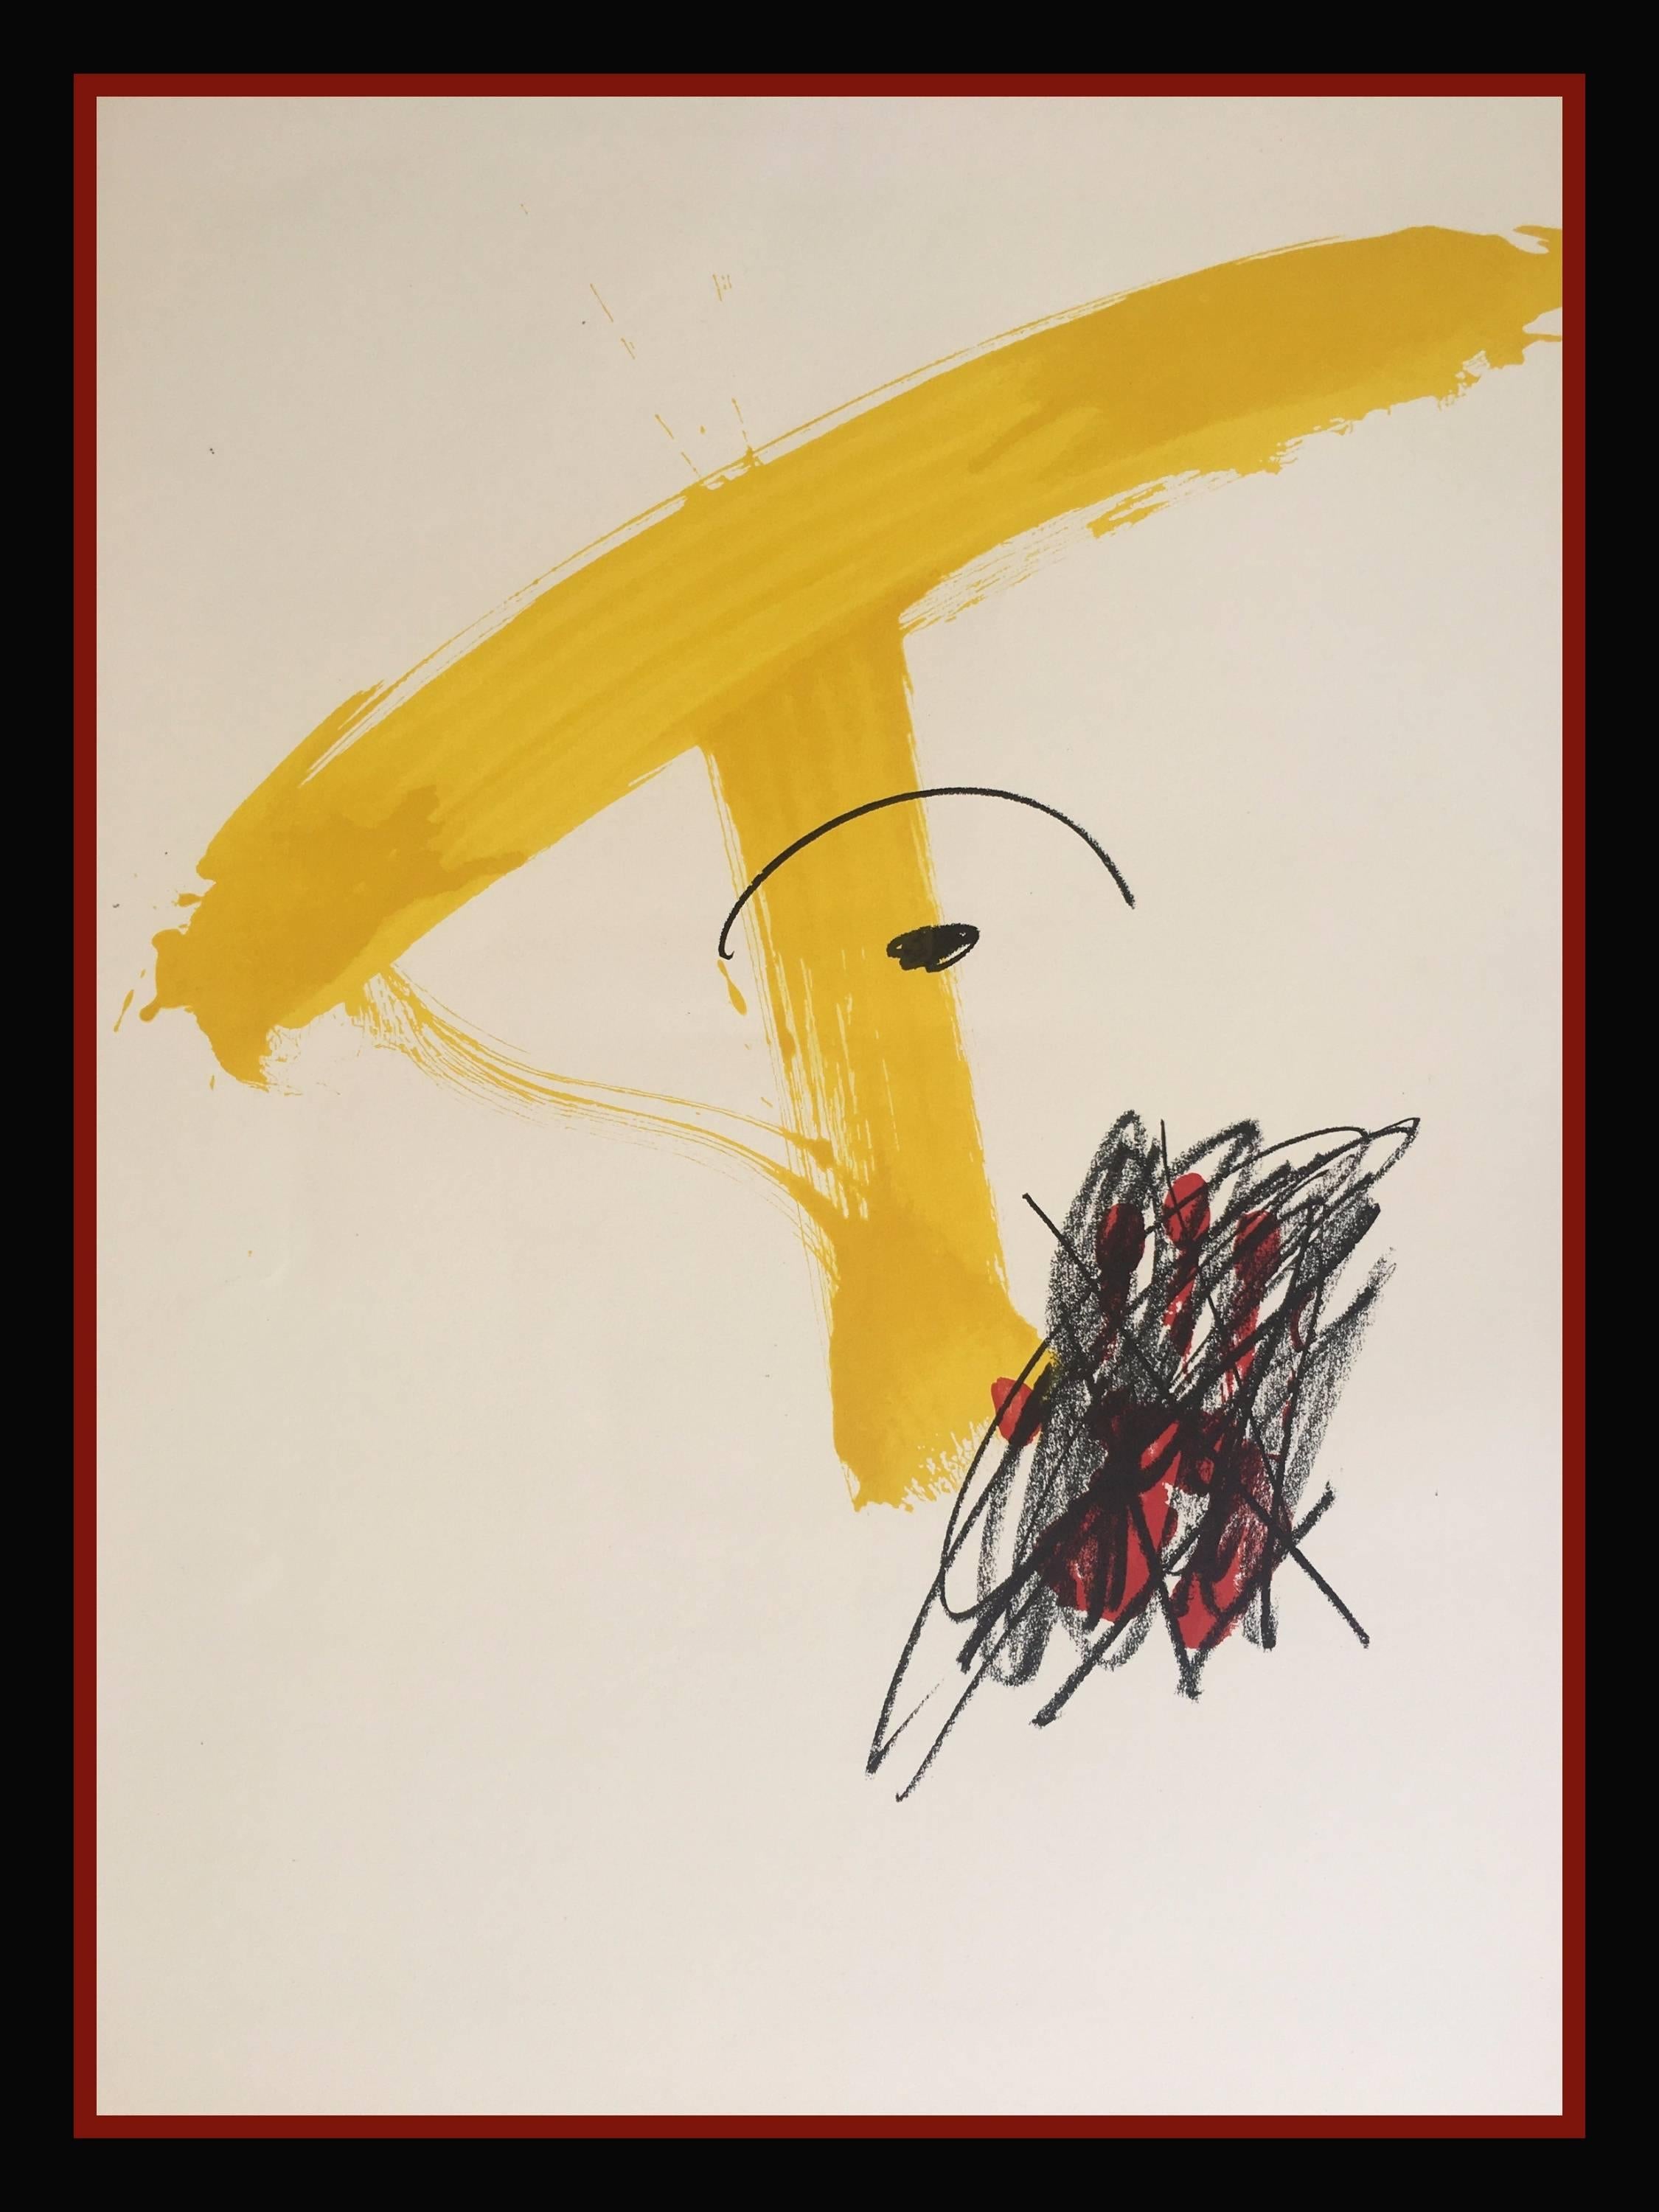 Antoni Tàpies Abstract Print - "MESTRES DE CATALUNYA" 1974 original lithography painting